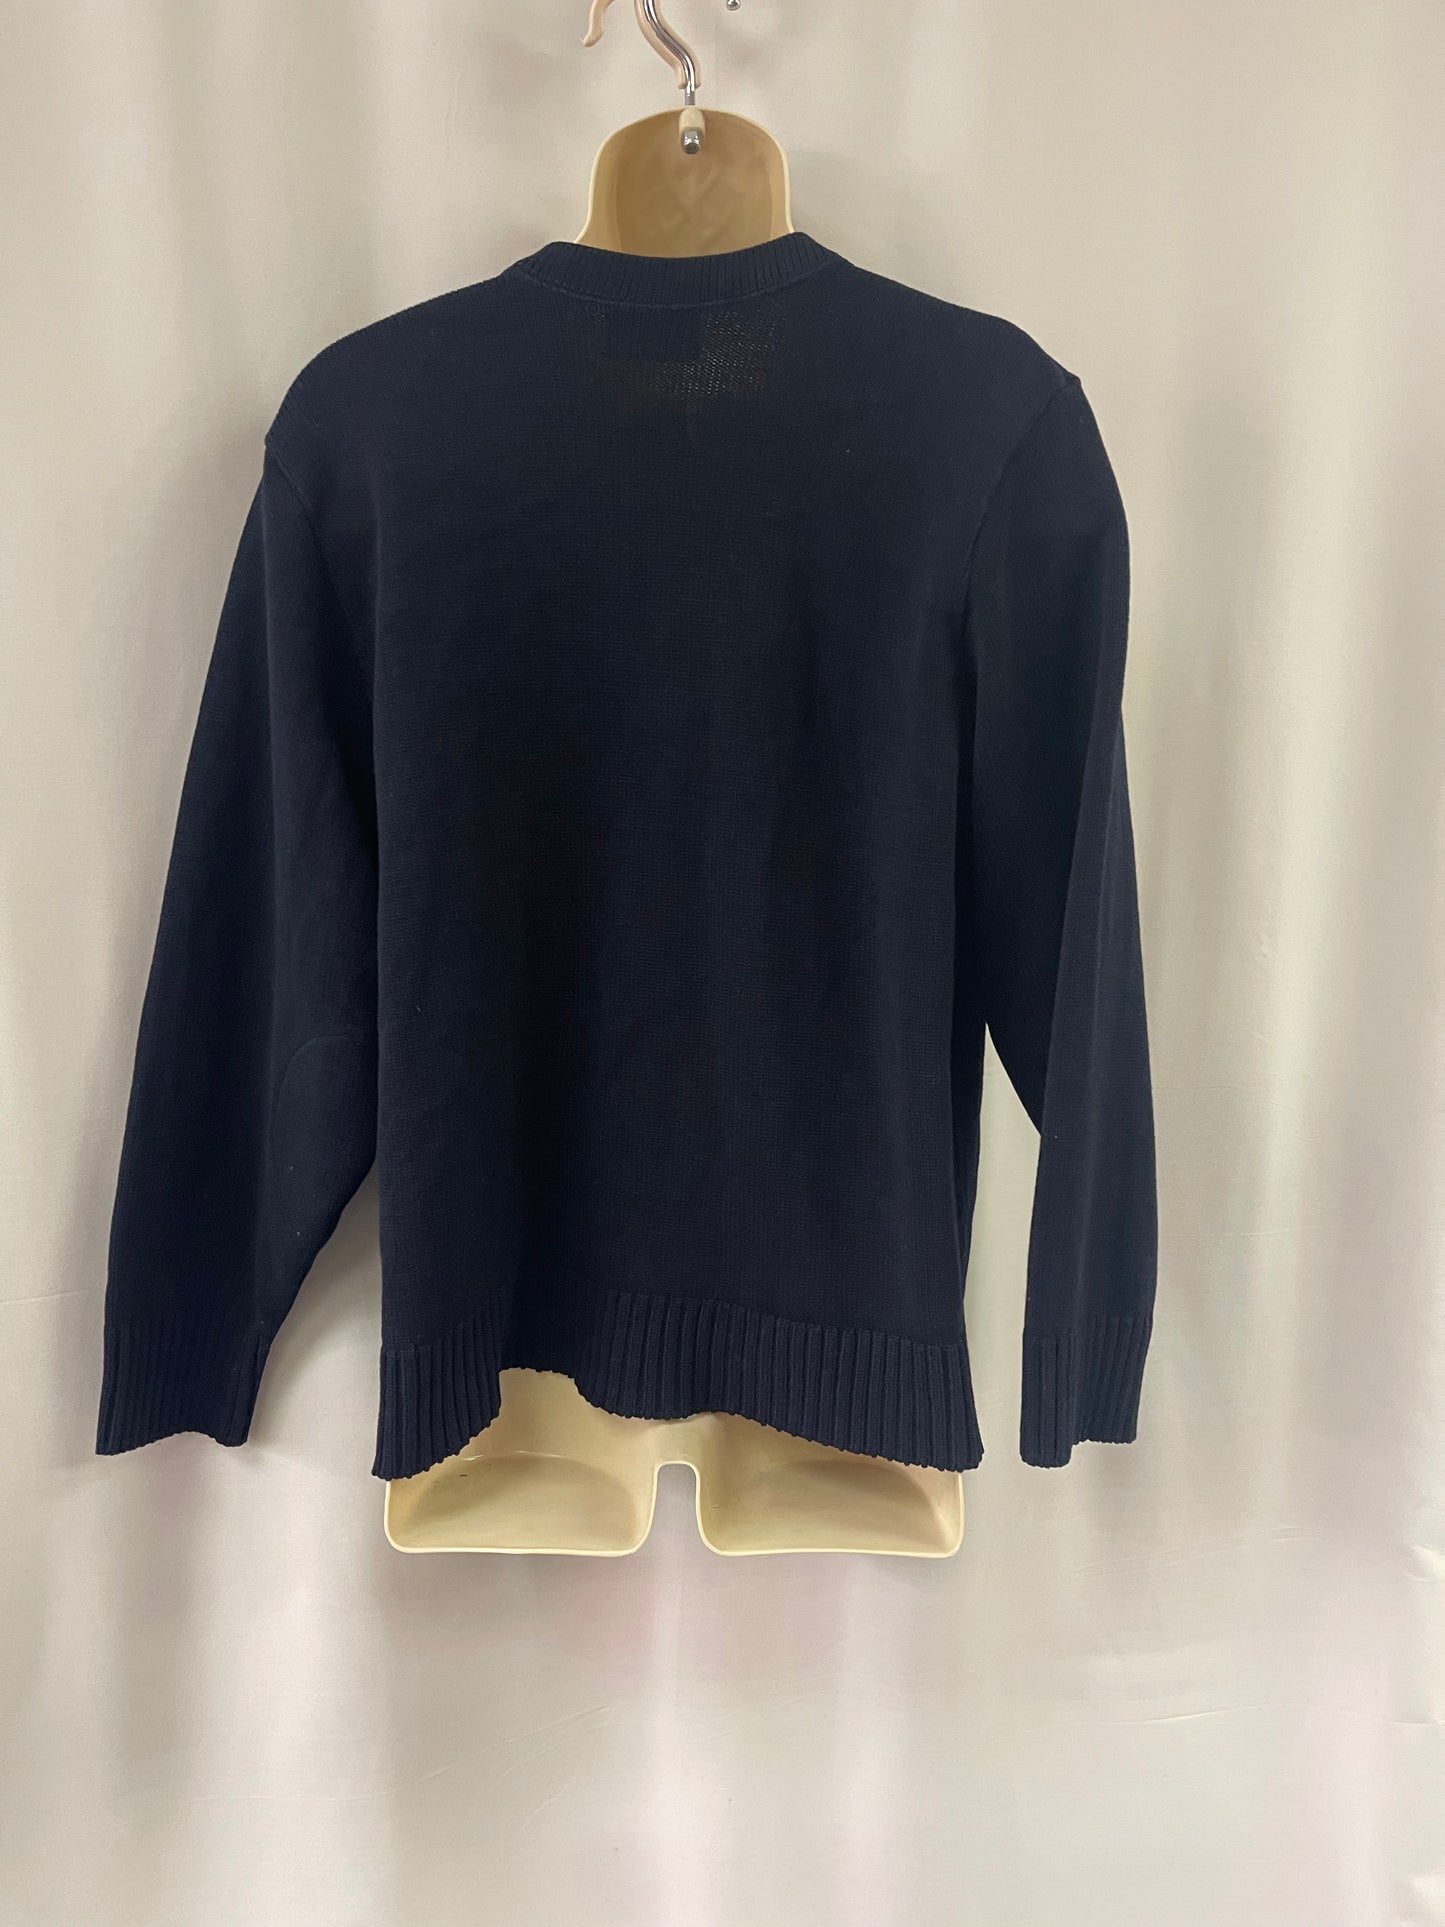 Navy Blue Knit Longsleeve Sweater